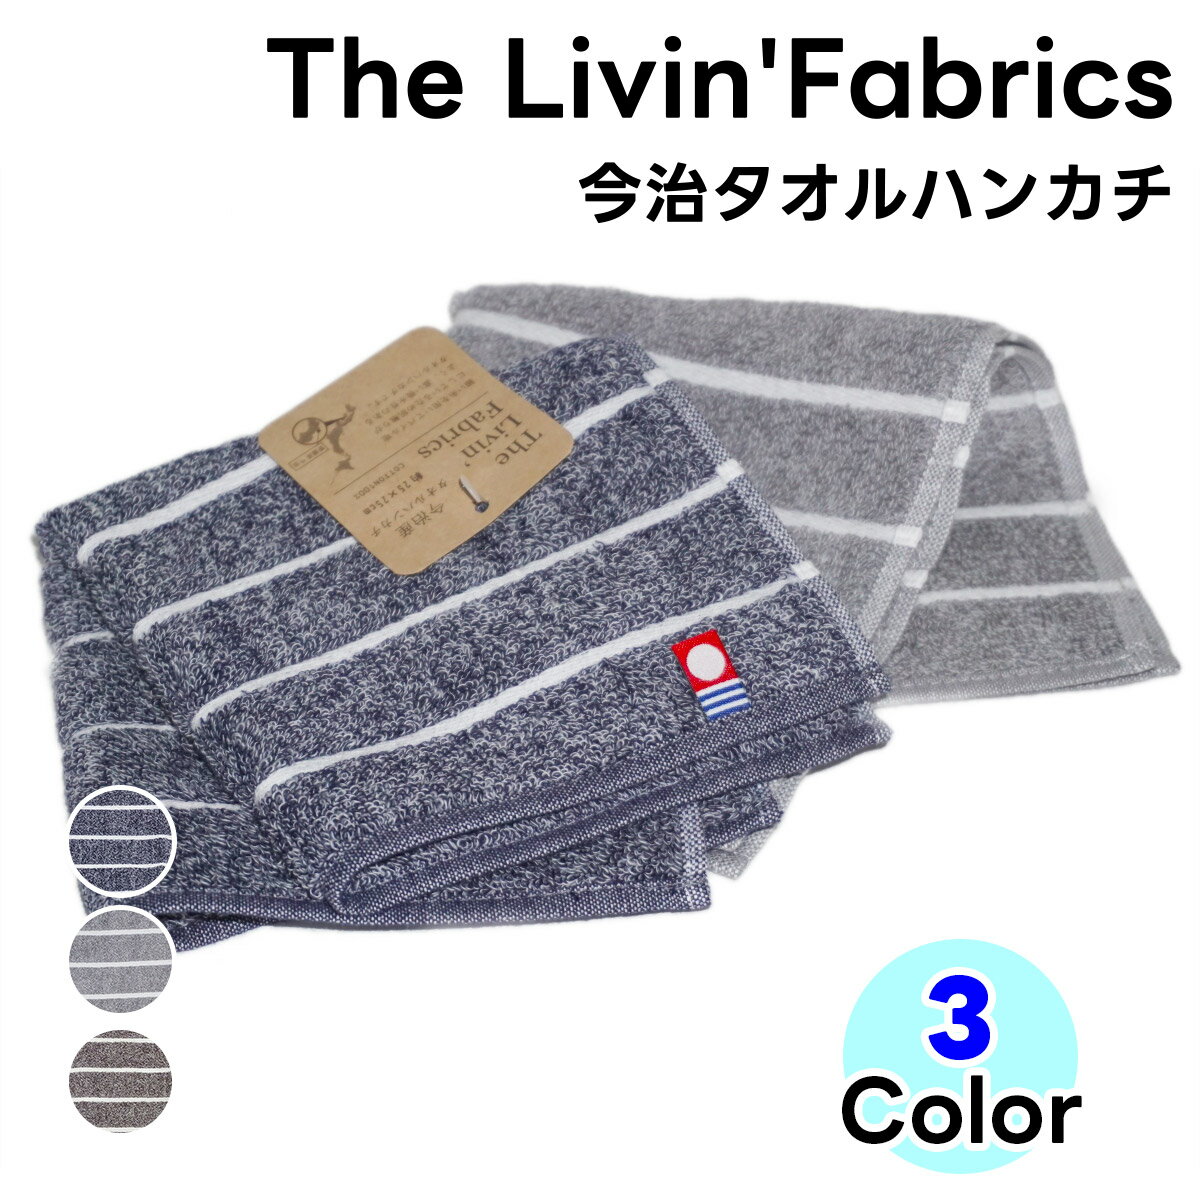 タオルハンカチ（1000円程度） 今治産 タオルハンカチ The　Livin'　Fabrics 1枚 全3色 約25cm×25cm 日本製 コットン 国産 ハンドタオル 今治タオル ネイビー グレー ブラウン